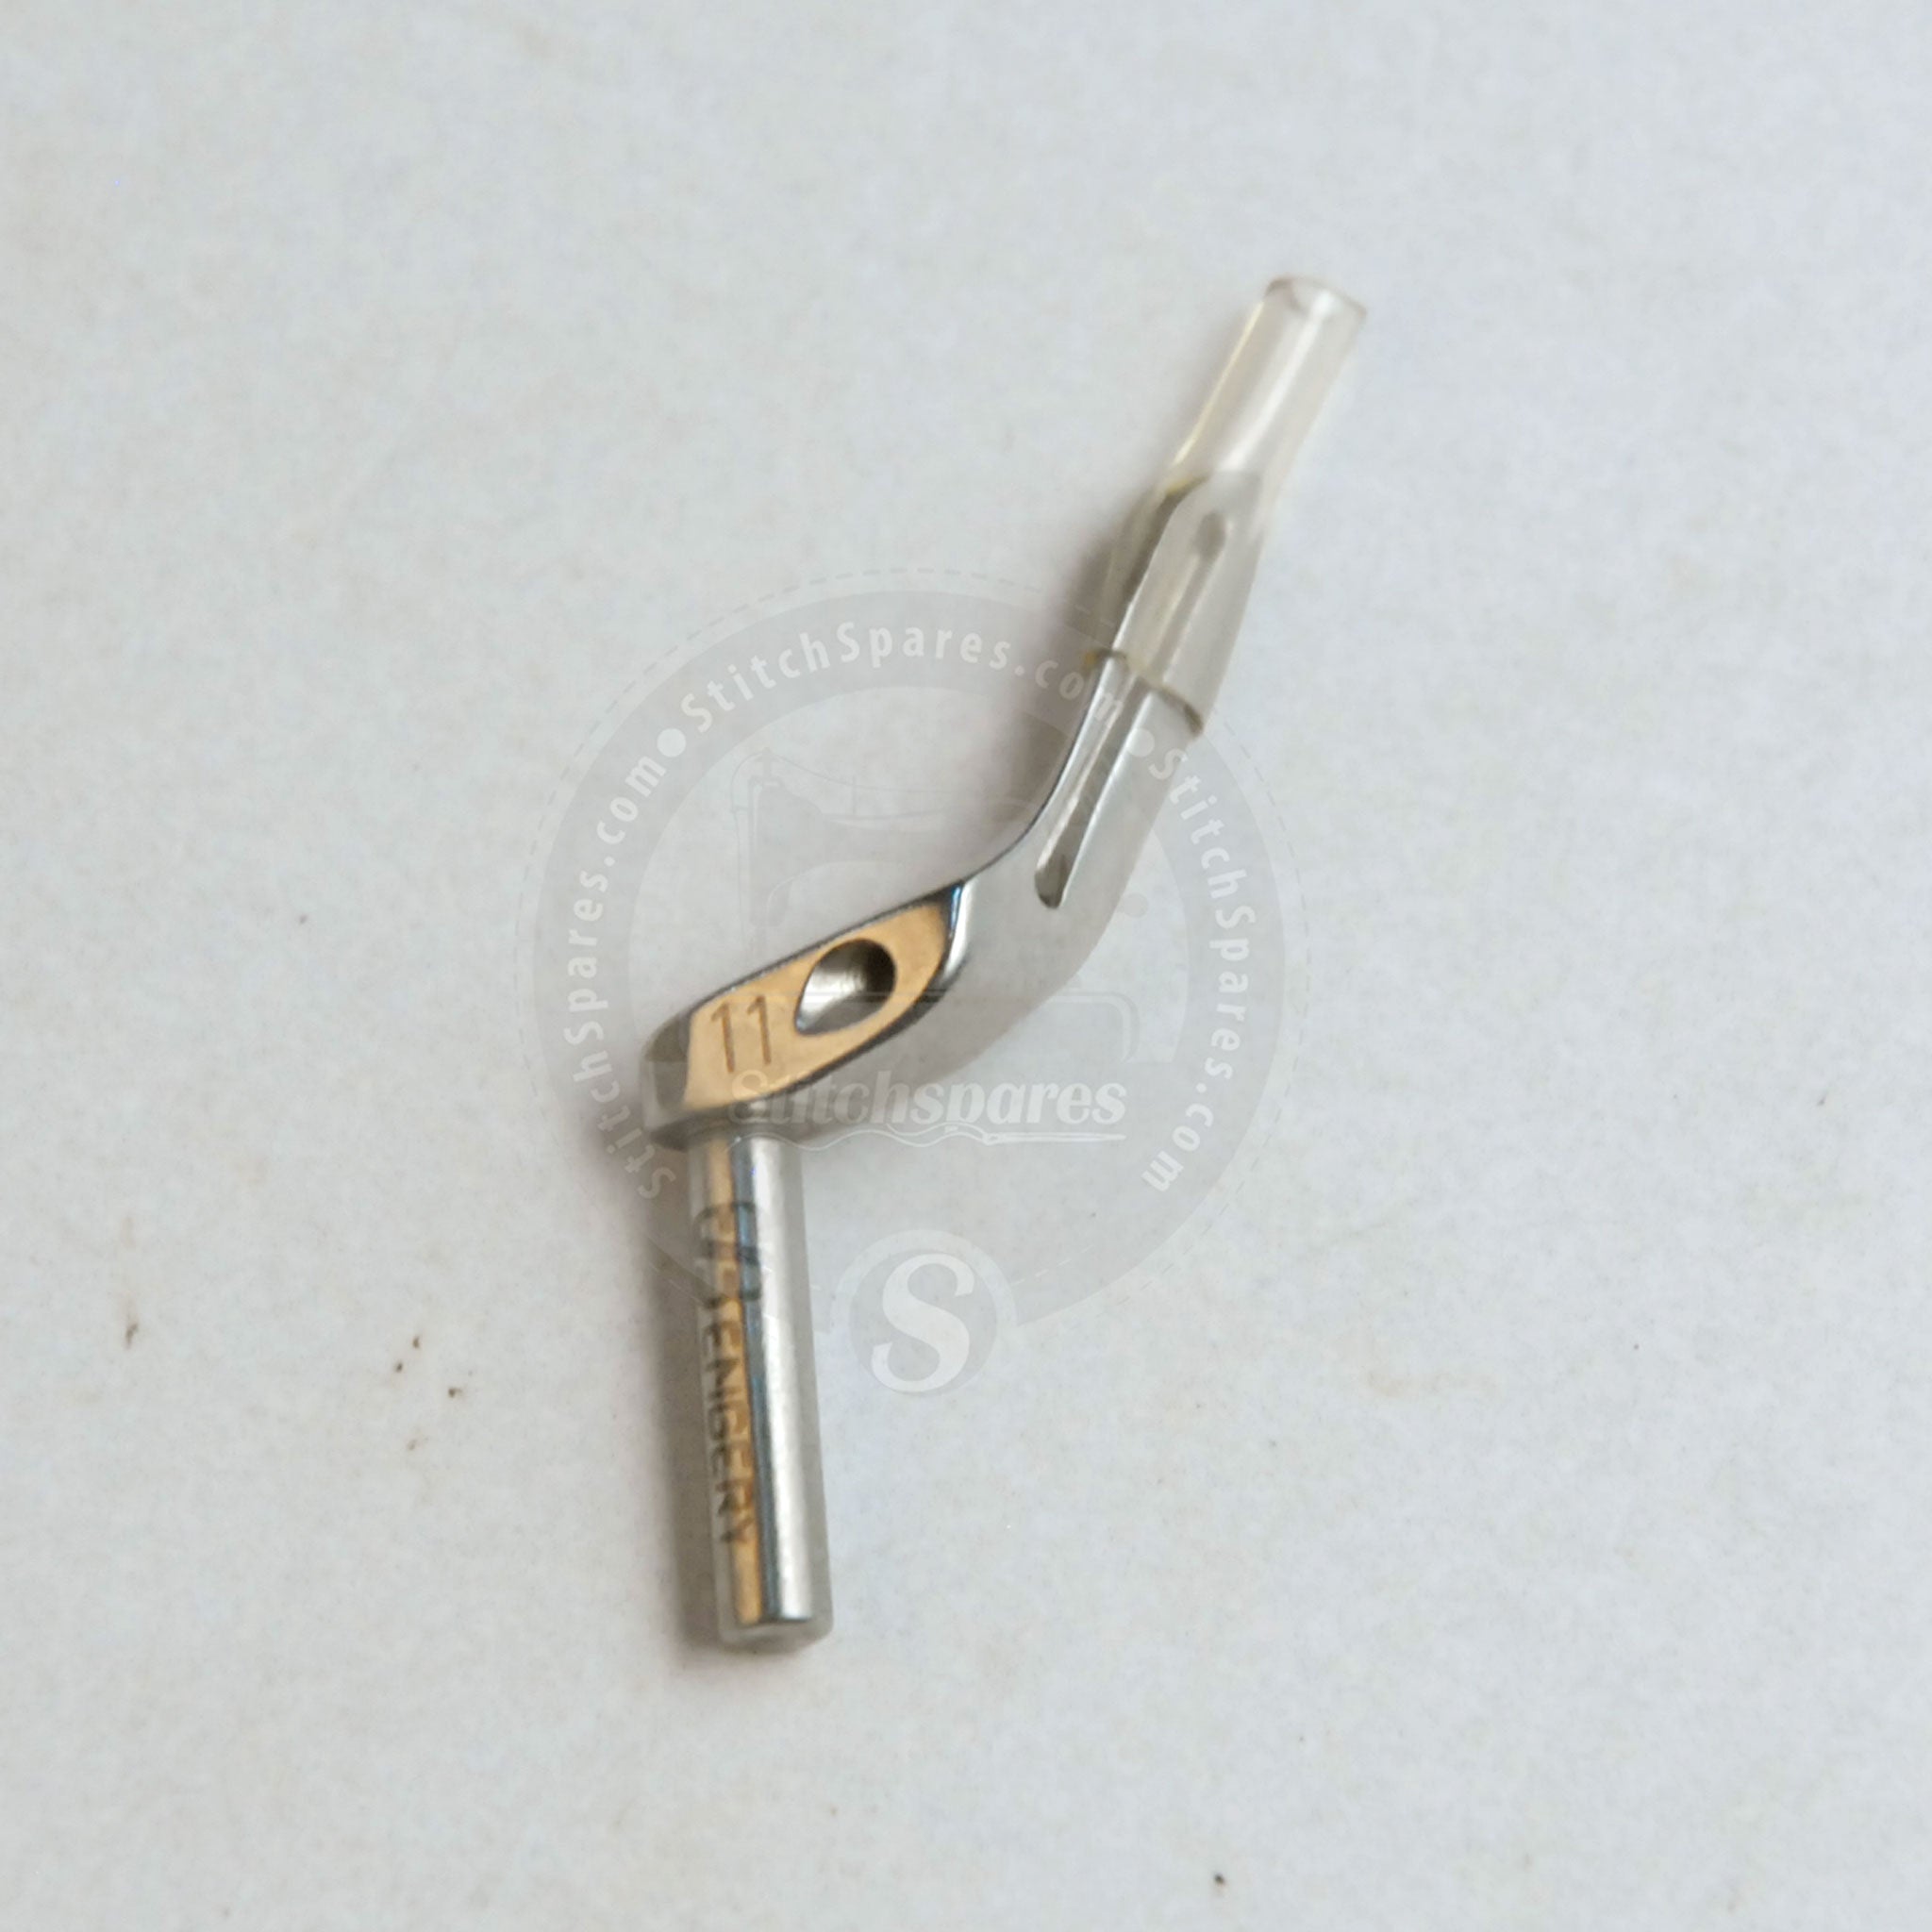 #11 Looper / #204949 Upper Looper PEGASUS M700 Overlock Repuesto para máquina de coser